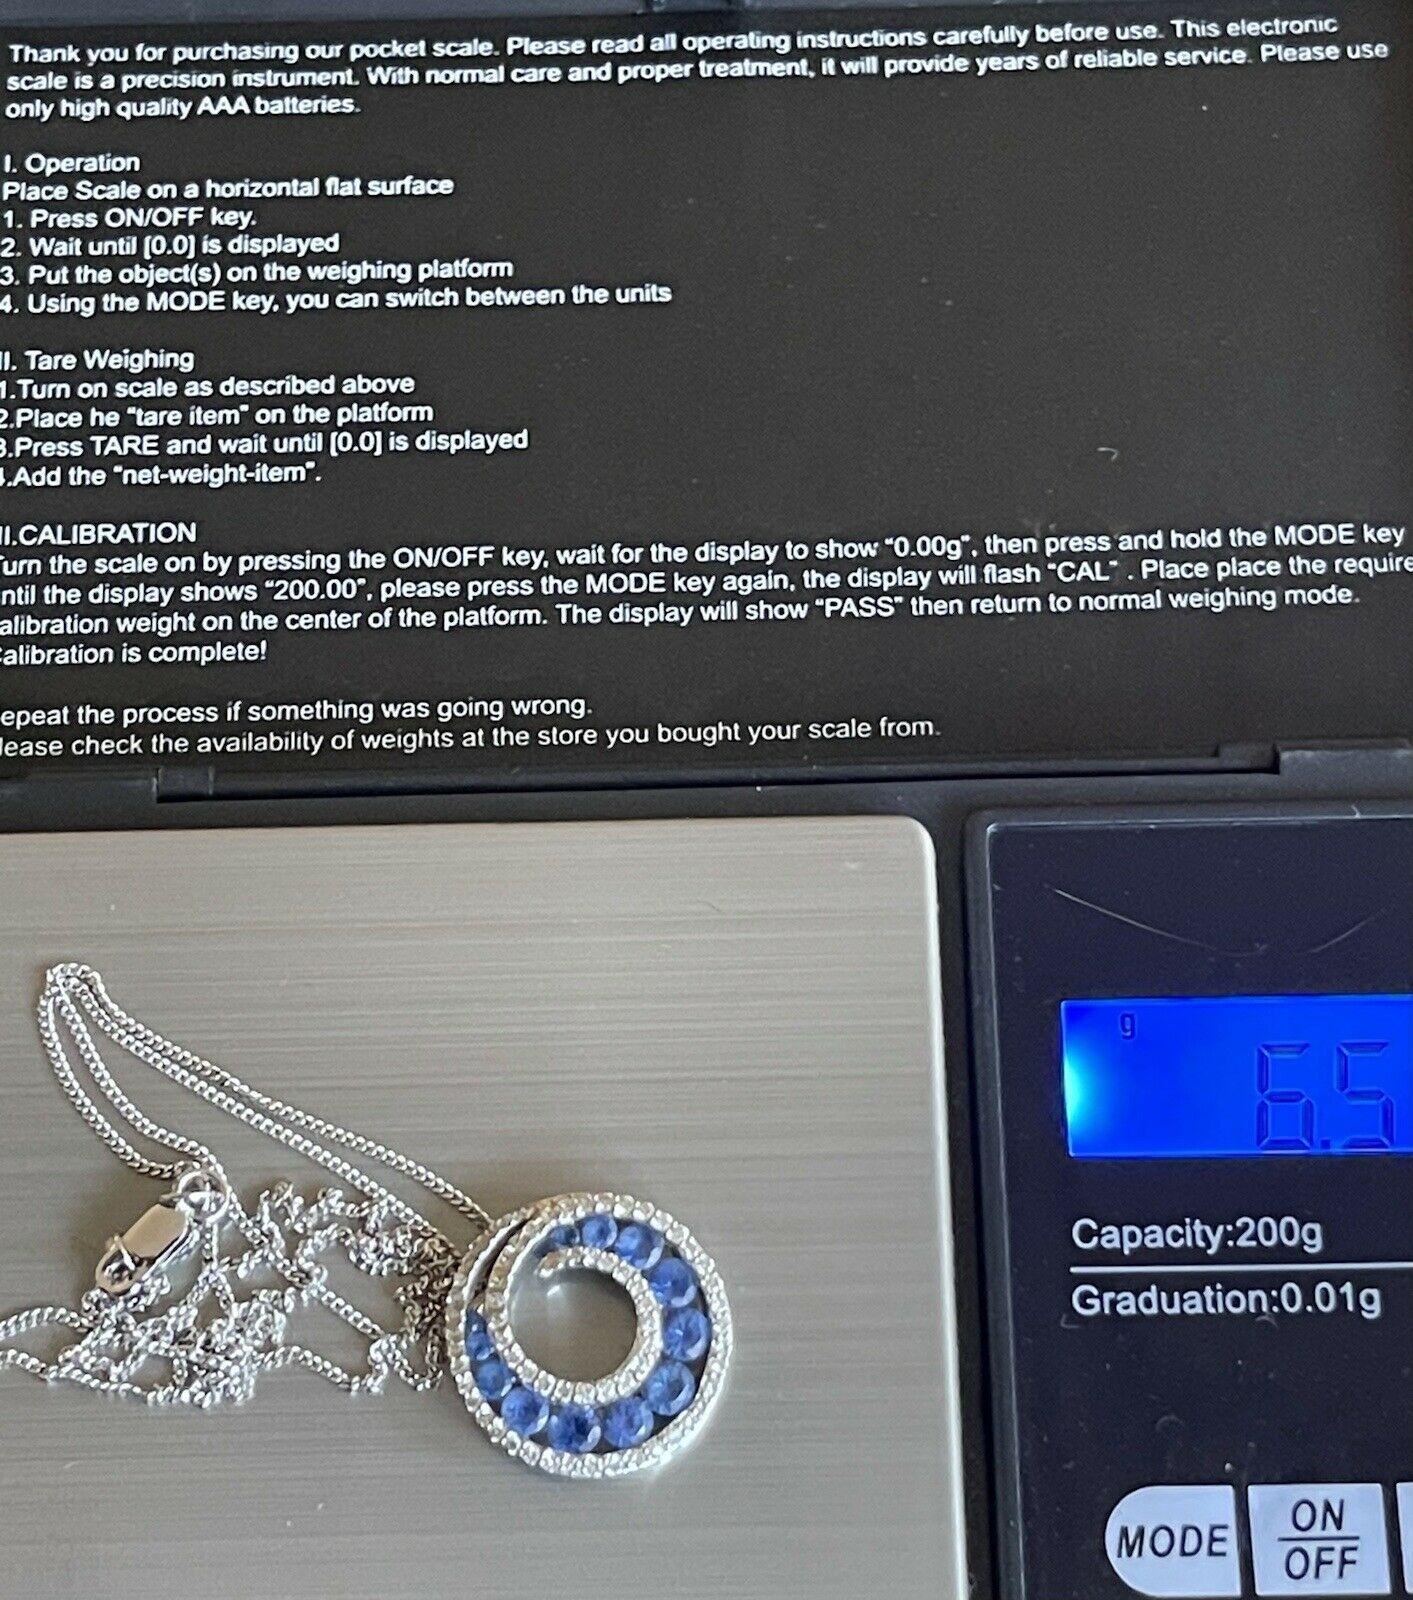 Der typisch britische Schmuckstil trifft in dieser einzigartigen Halskette auf modernen, schicken Schmuck.

Funkelnde Diamanten in Kombination mit natürlichen Saphiren in den schönsten Blautönen.

Diamanten 0,60ct

Saphir 2ct ca.

18 Zoll